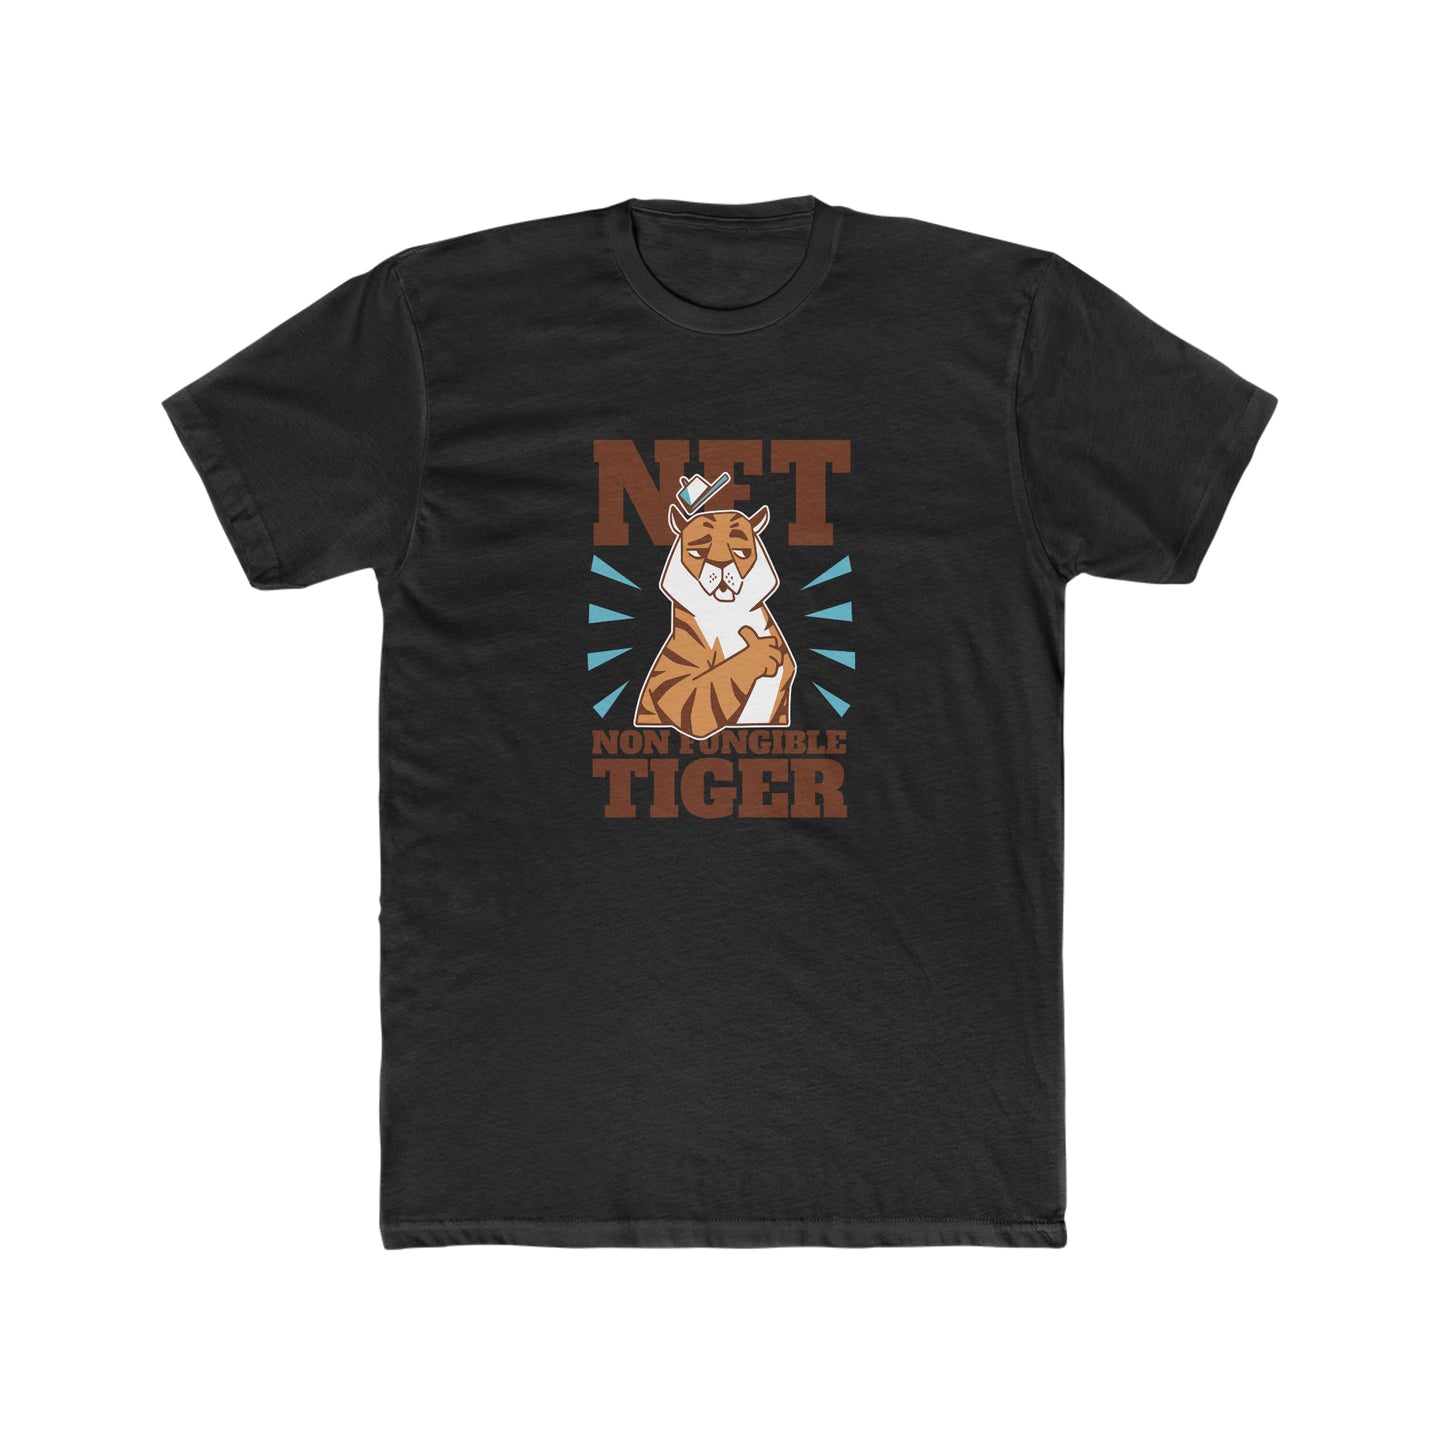 Men's Cotton Crew Non Fungible Tiger T-shirt